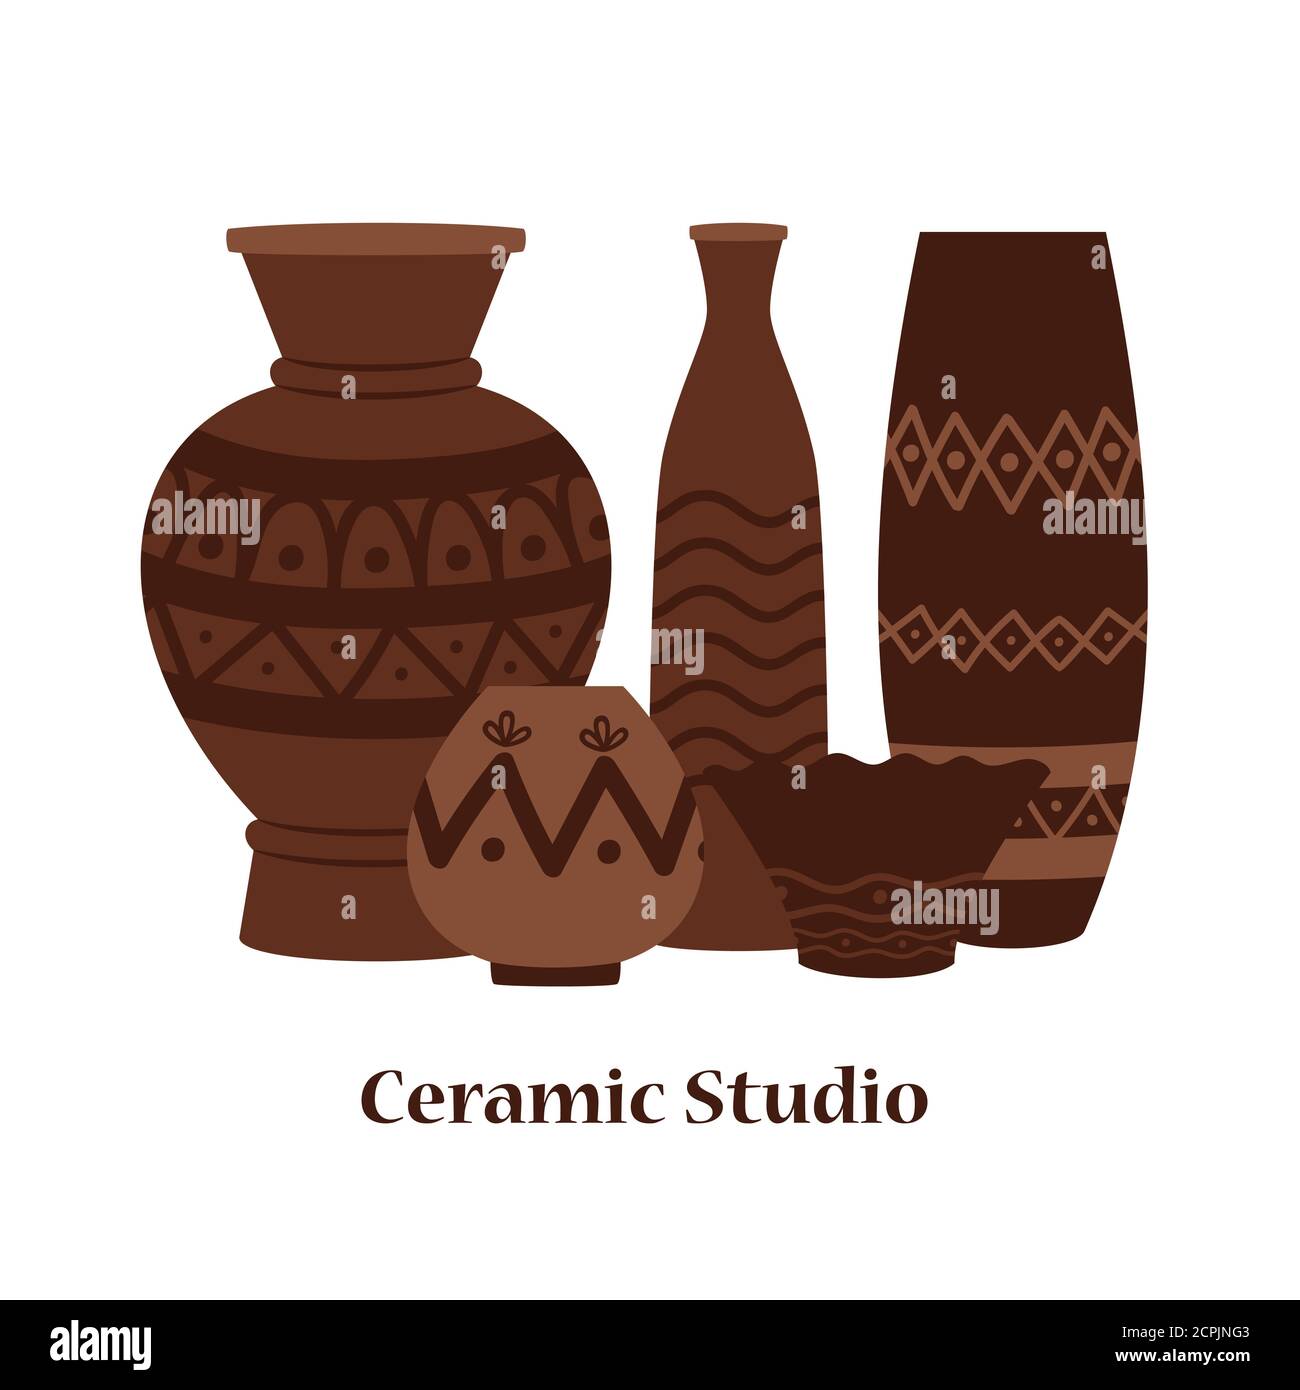 Keramik Studio Emblem Vektor-Design mit Ton Vasen und Töpfe. Illustration von Ton römischen traditionellen Vase Stock Vektor